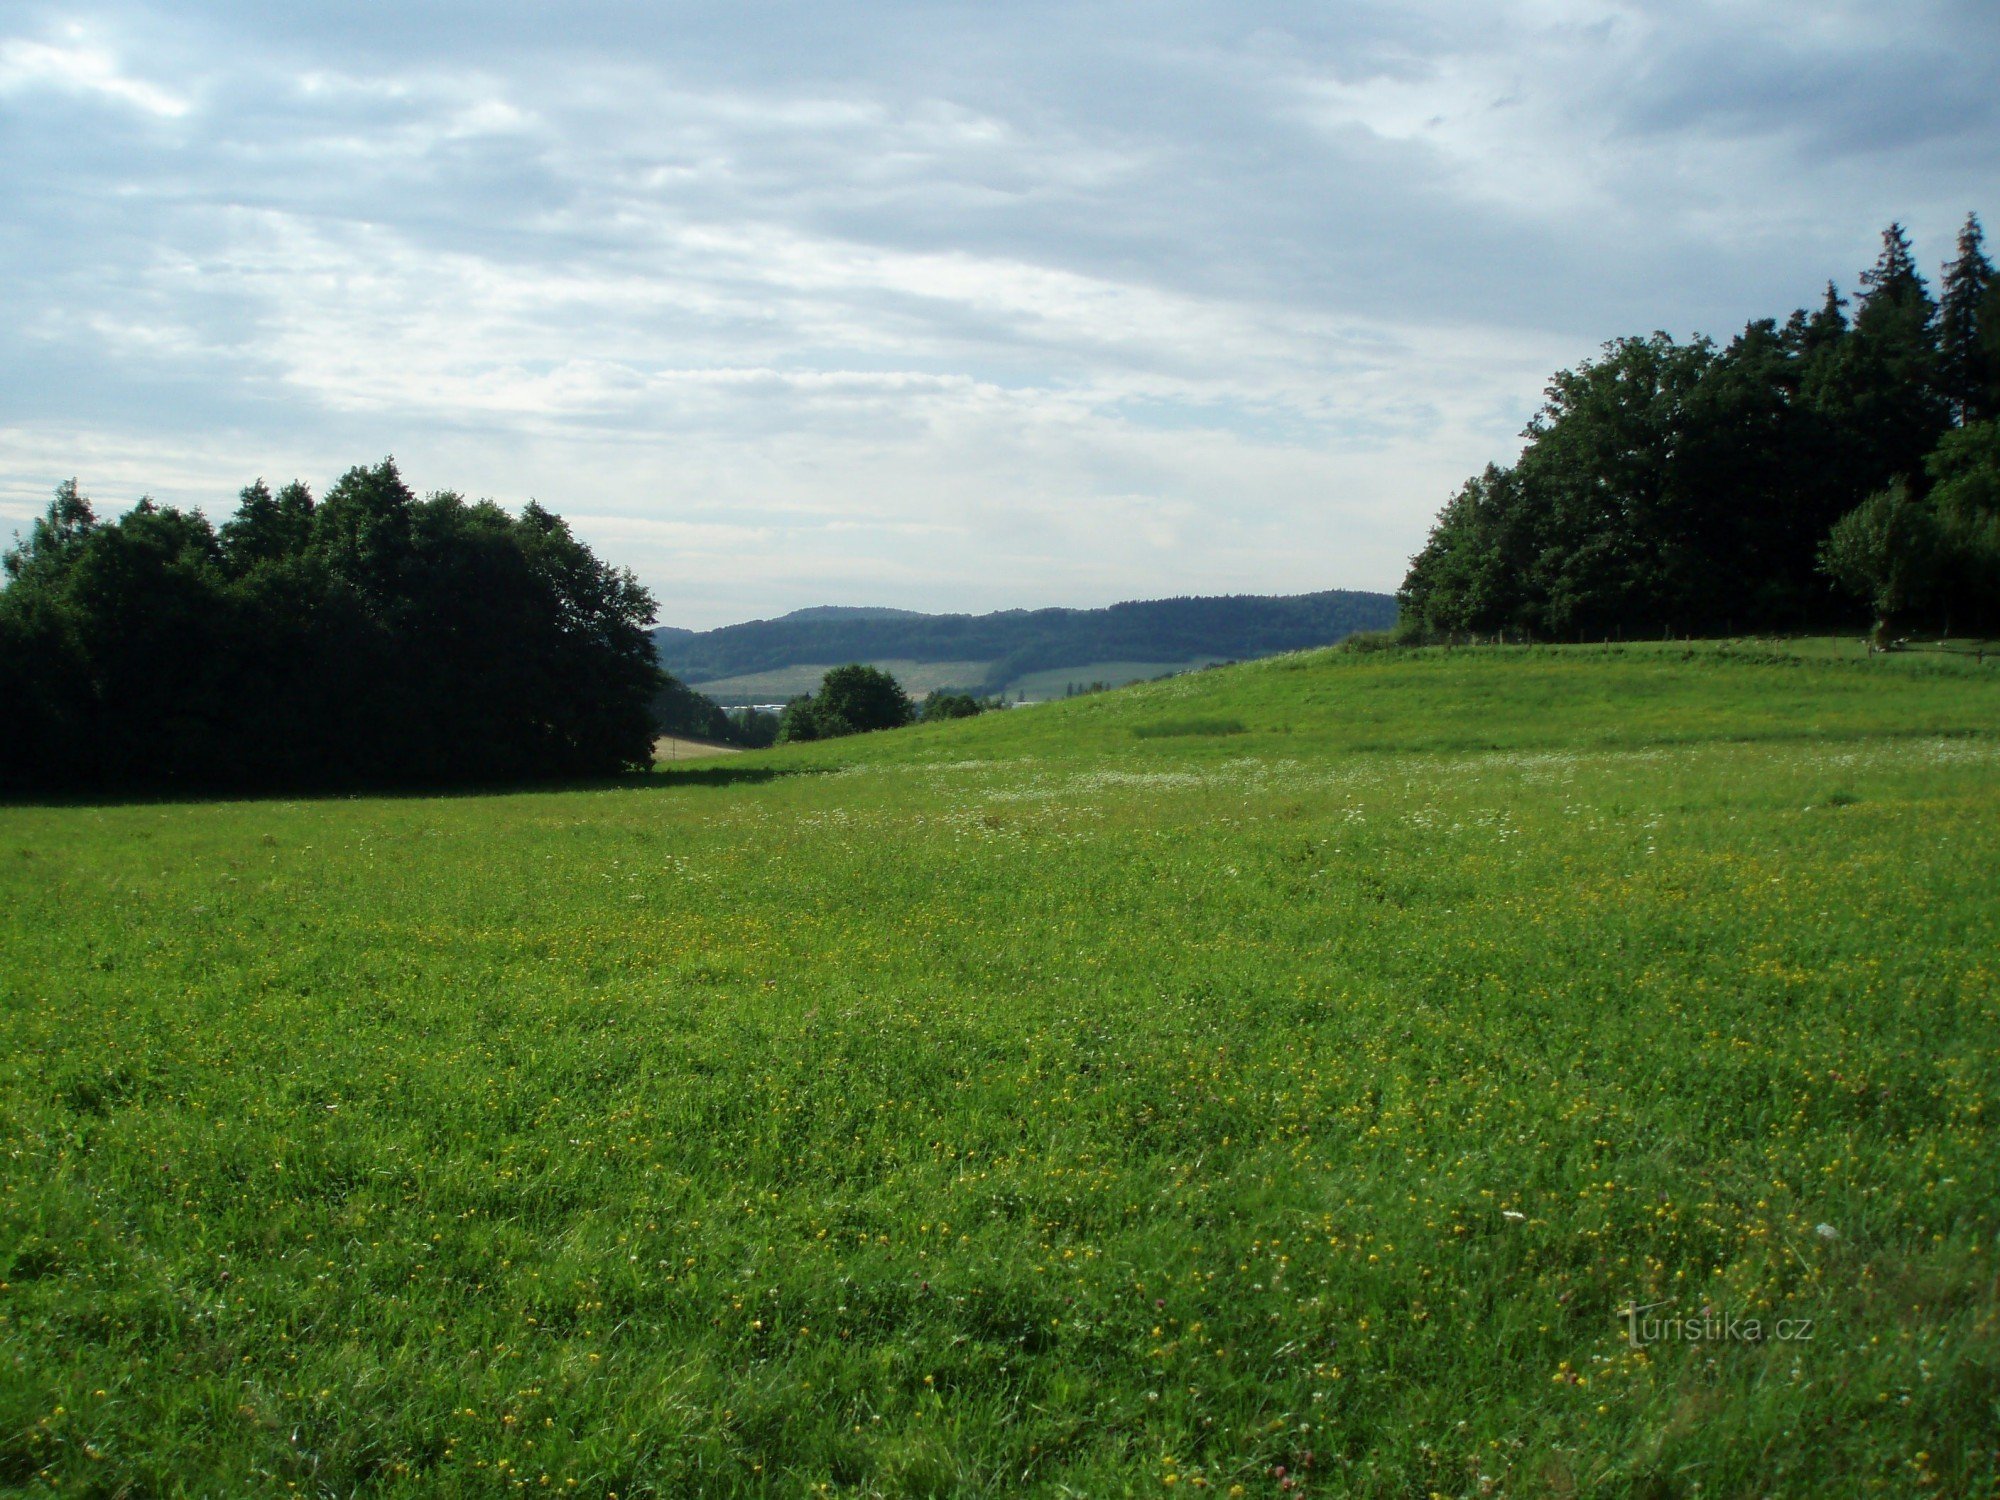 Surroundings of Veřovice